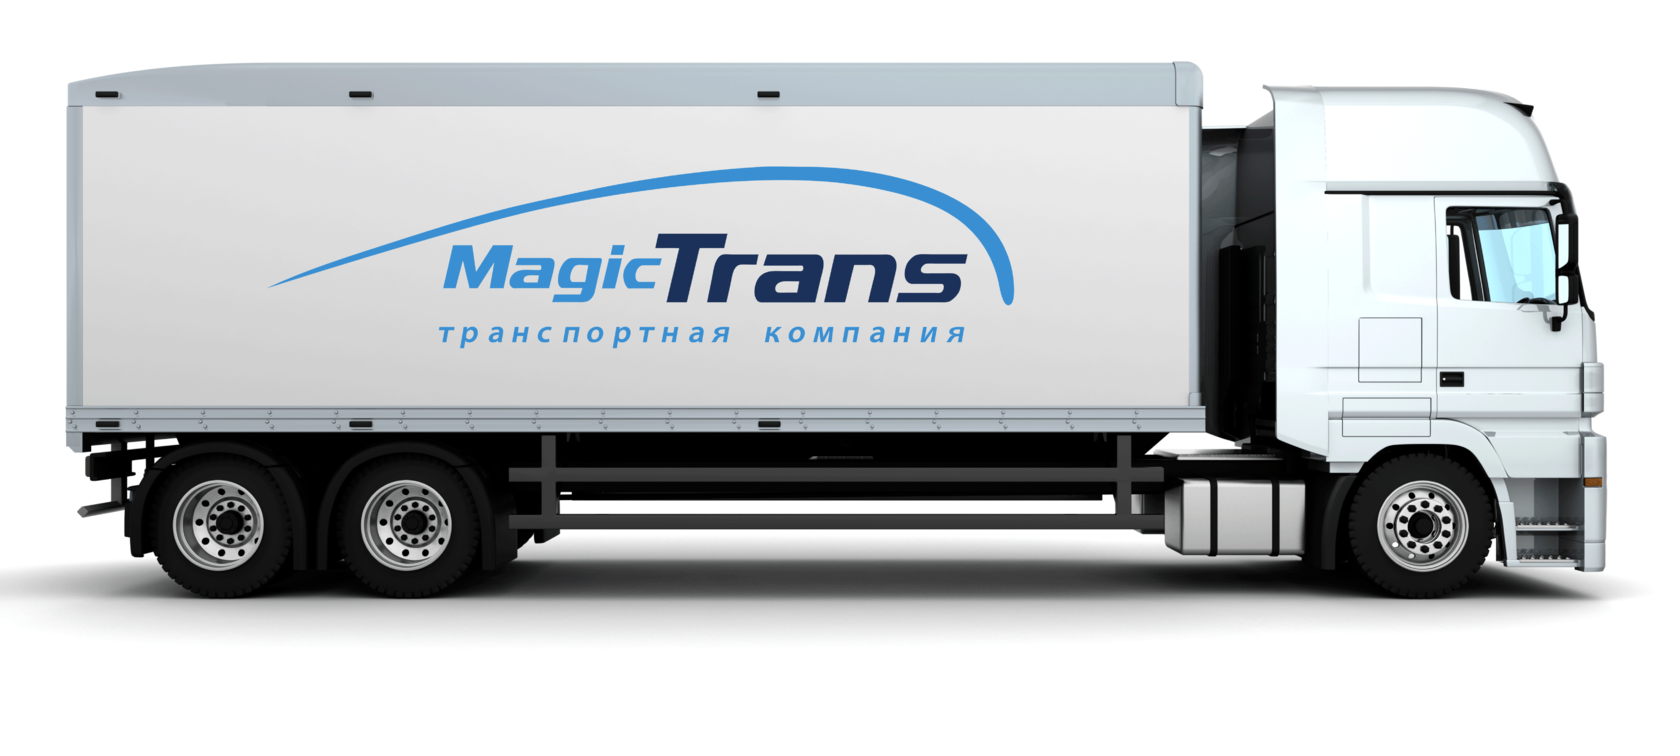 Транспортная magic. Мейджик транс транспортная компания. Мейджик транс транспортная компания лого. ТК Мейджик транс логотип. Фуры компании Magic Trans.